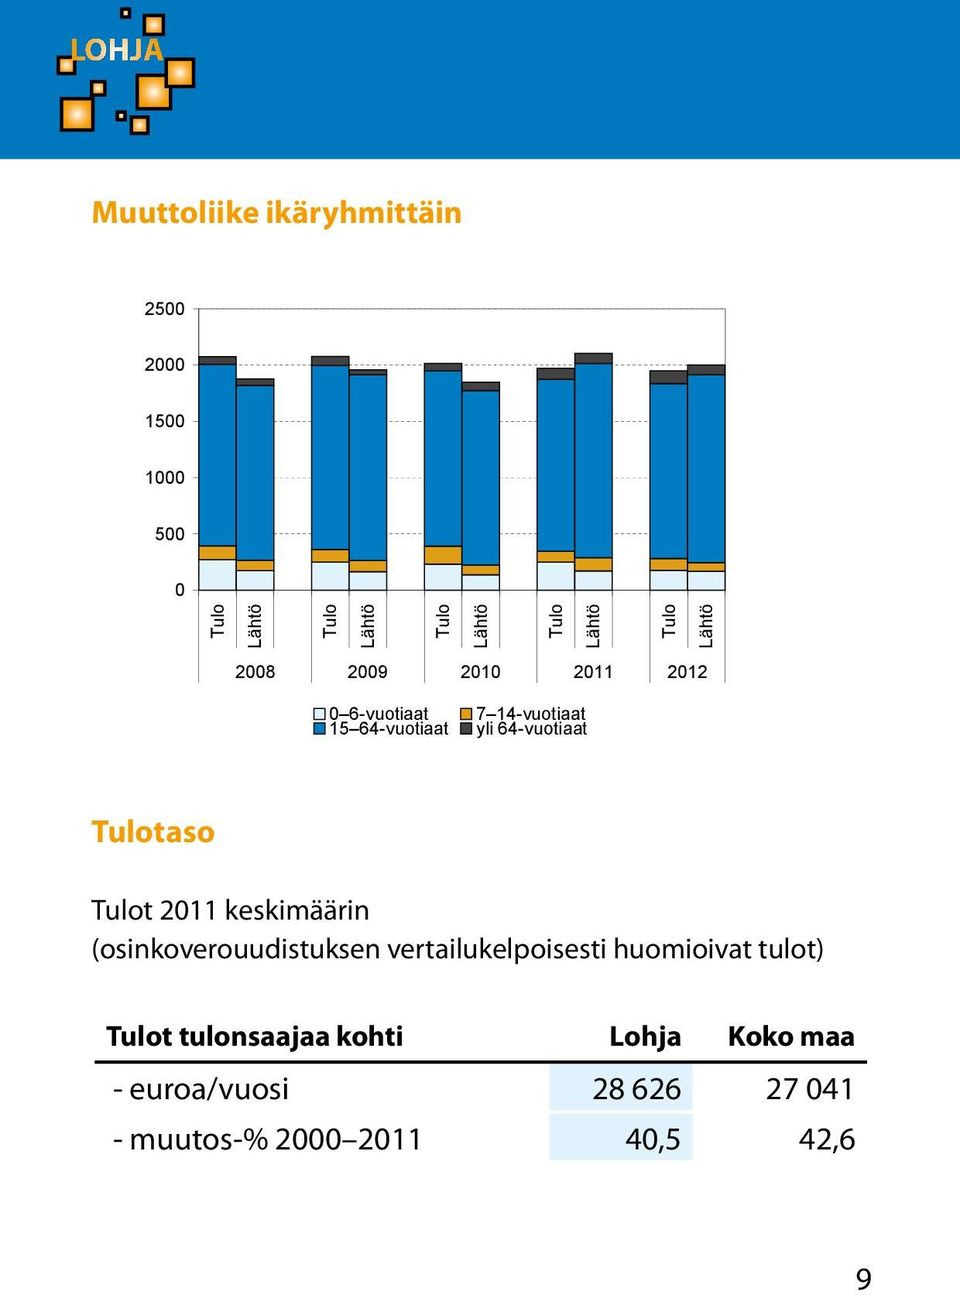 Tulotaso Tulot 2011 keskimäärin (osinkoverouudistuksen vertailukelpoisesti huomioivat tulot)